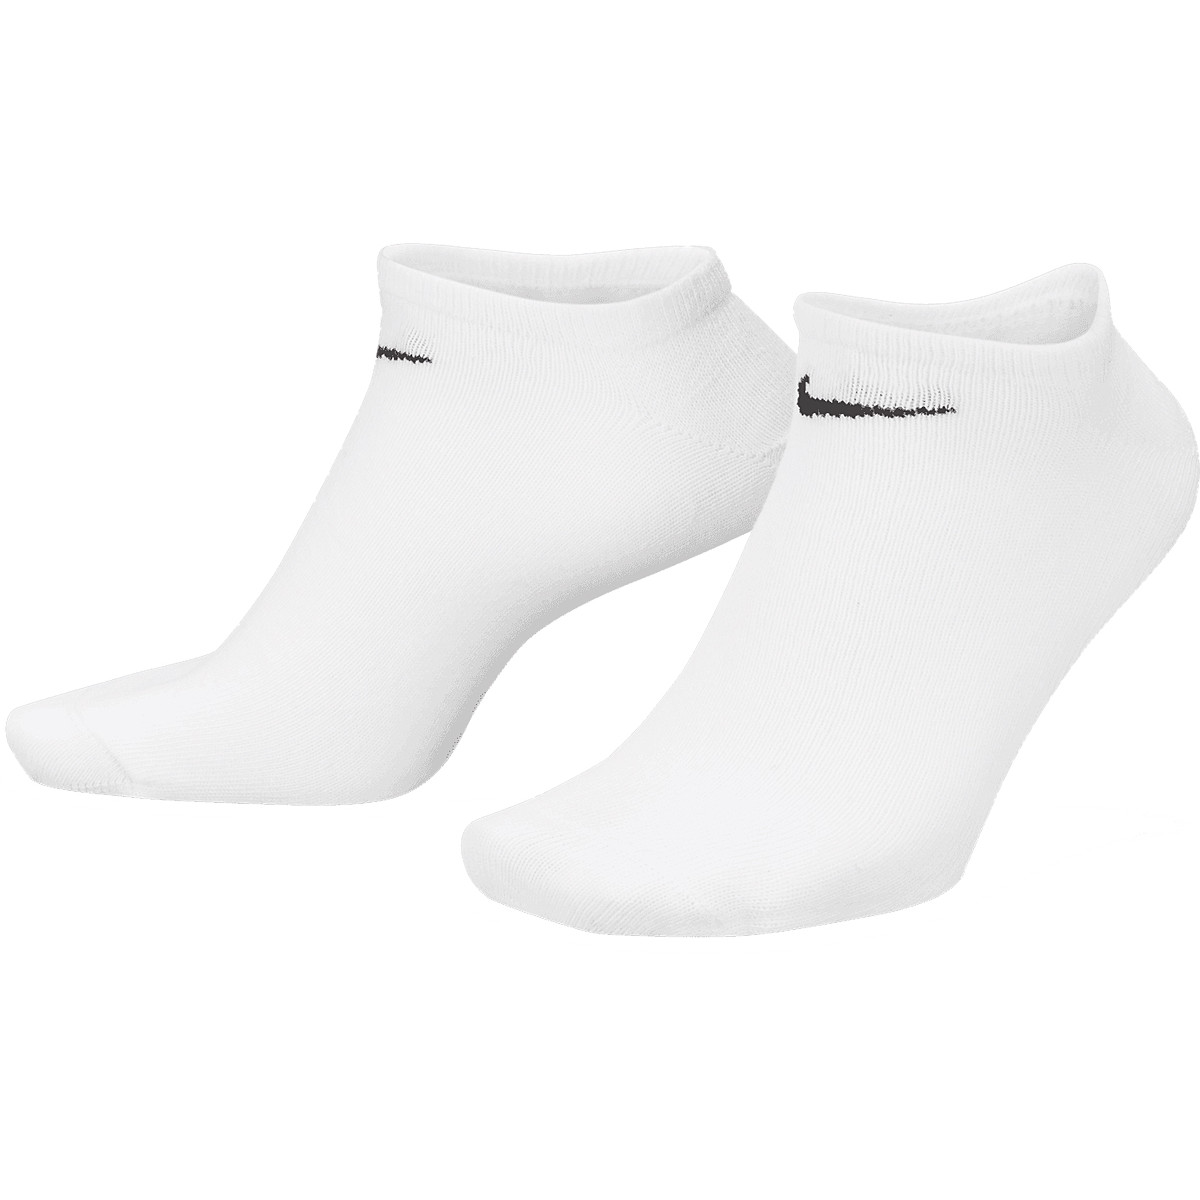 Chaussettes de sport Nike Swoosh Sports - Taille 46-50 - Unisexe - Noir